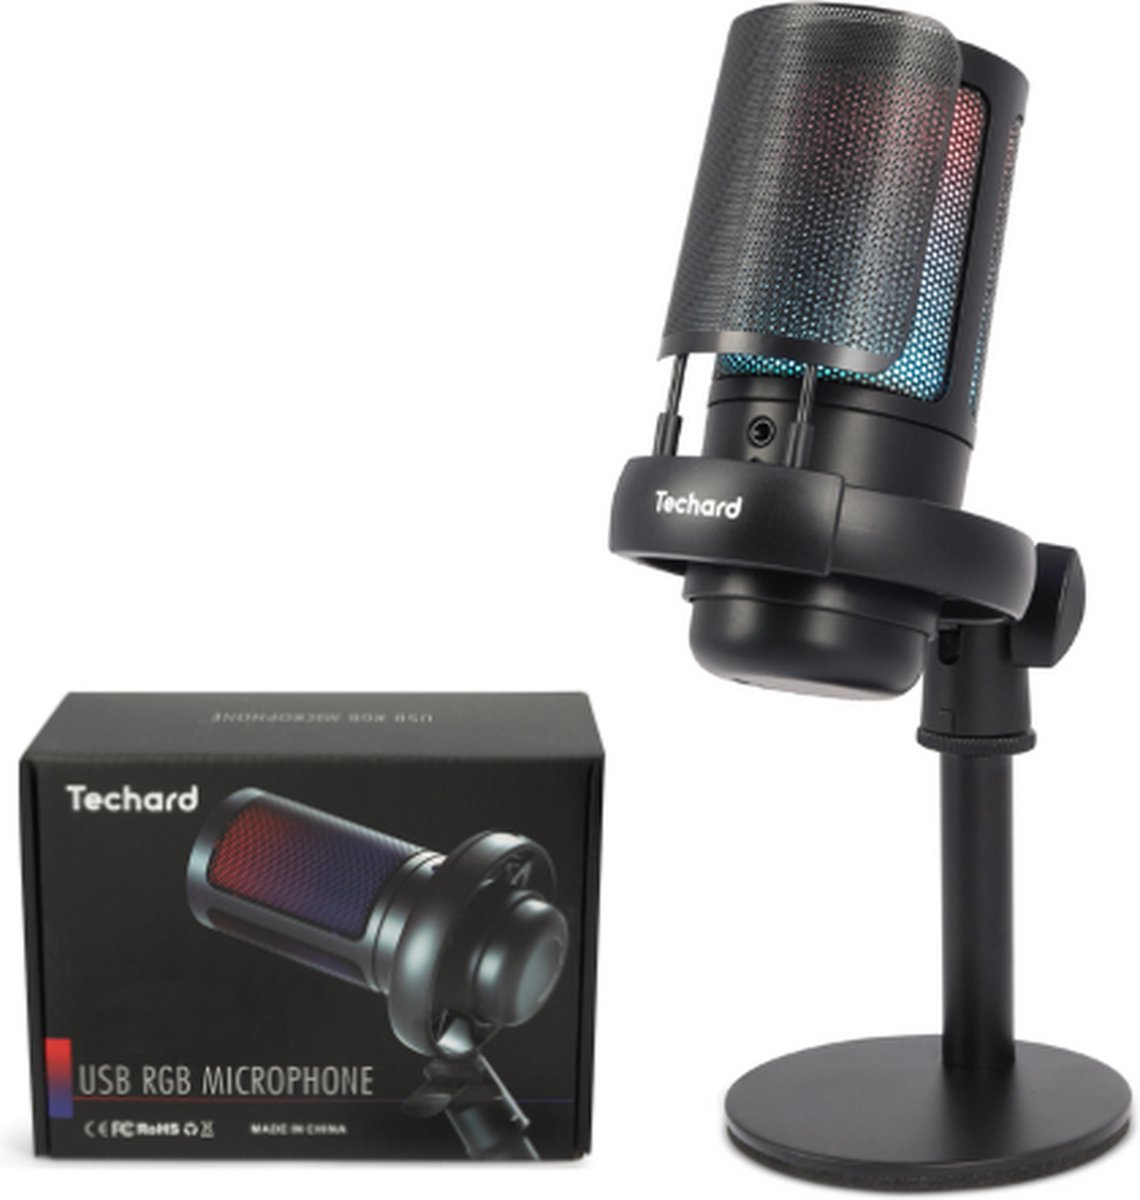 Techard USB Microfoon met Standaard voor PC en Gaming Microfoon - met Ruisfilter